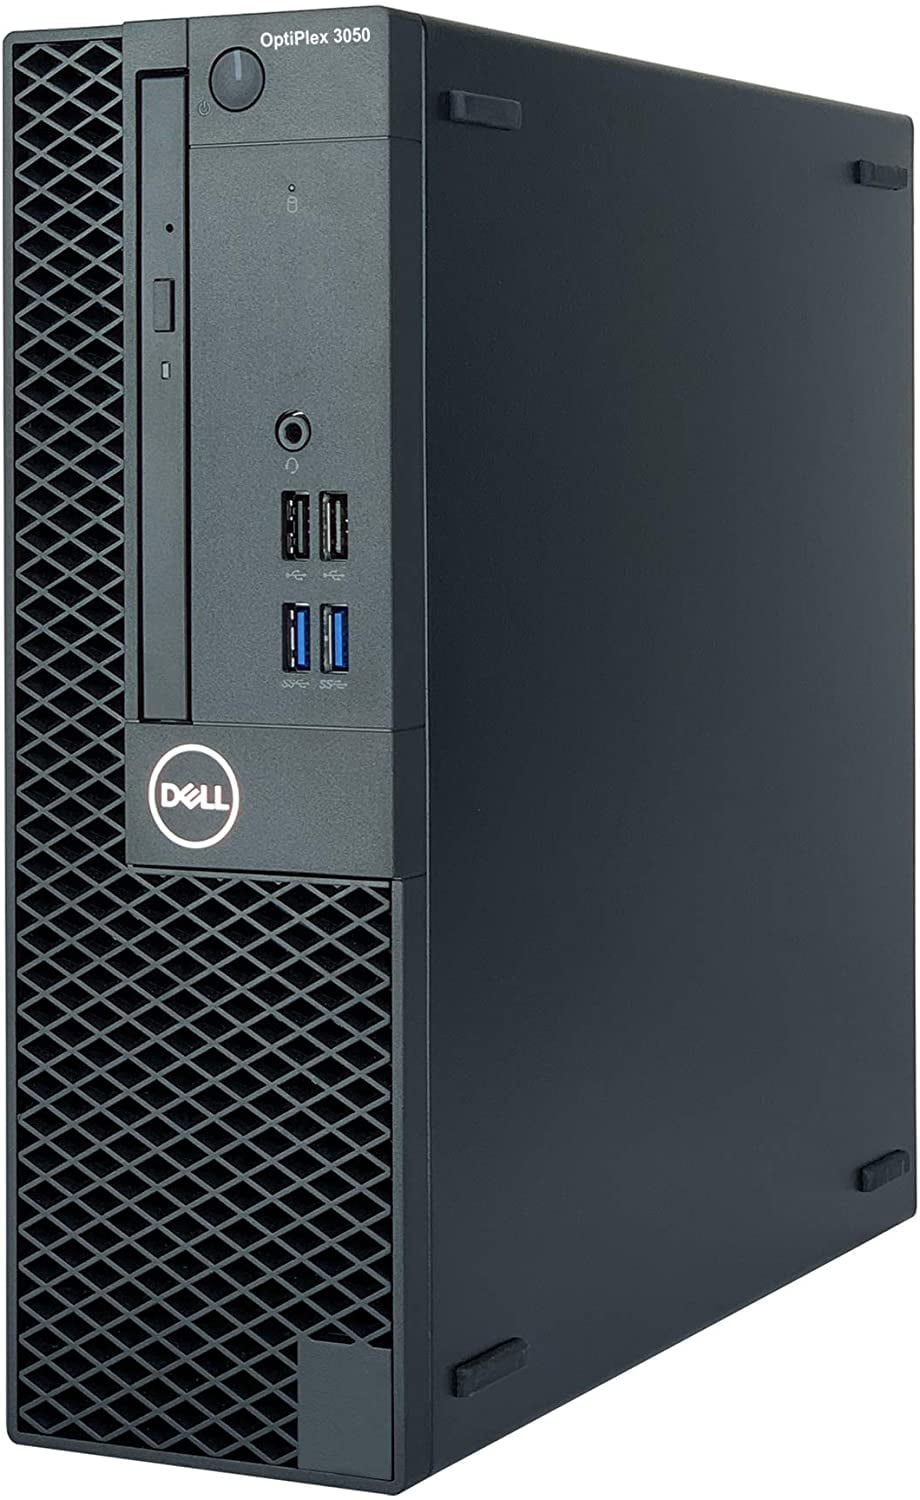 Dell Desktop Computer i5 6500 8GB 500HD HDMI Win 10 PC WiFi + 19